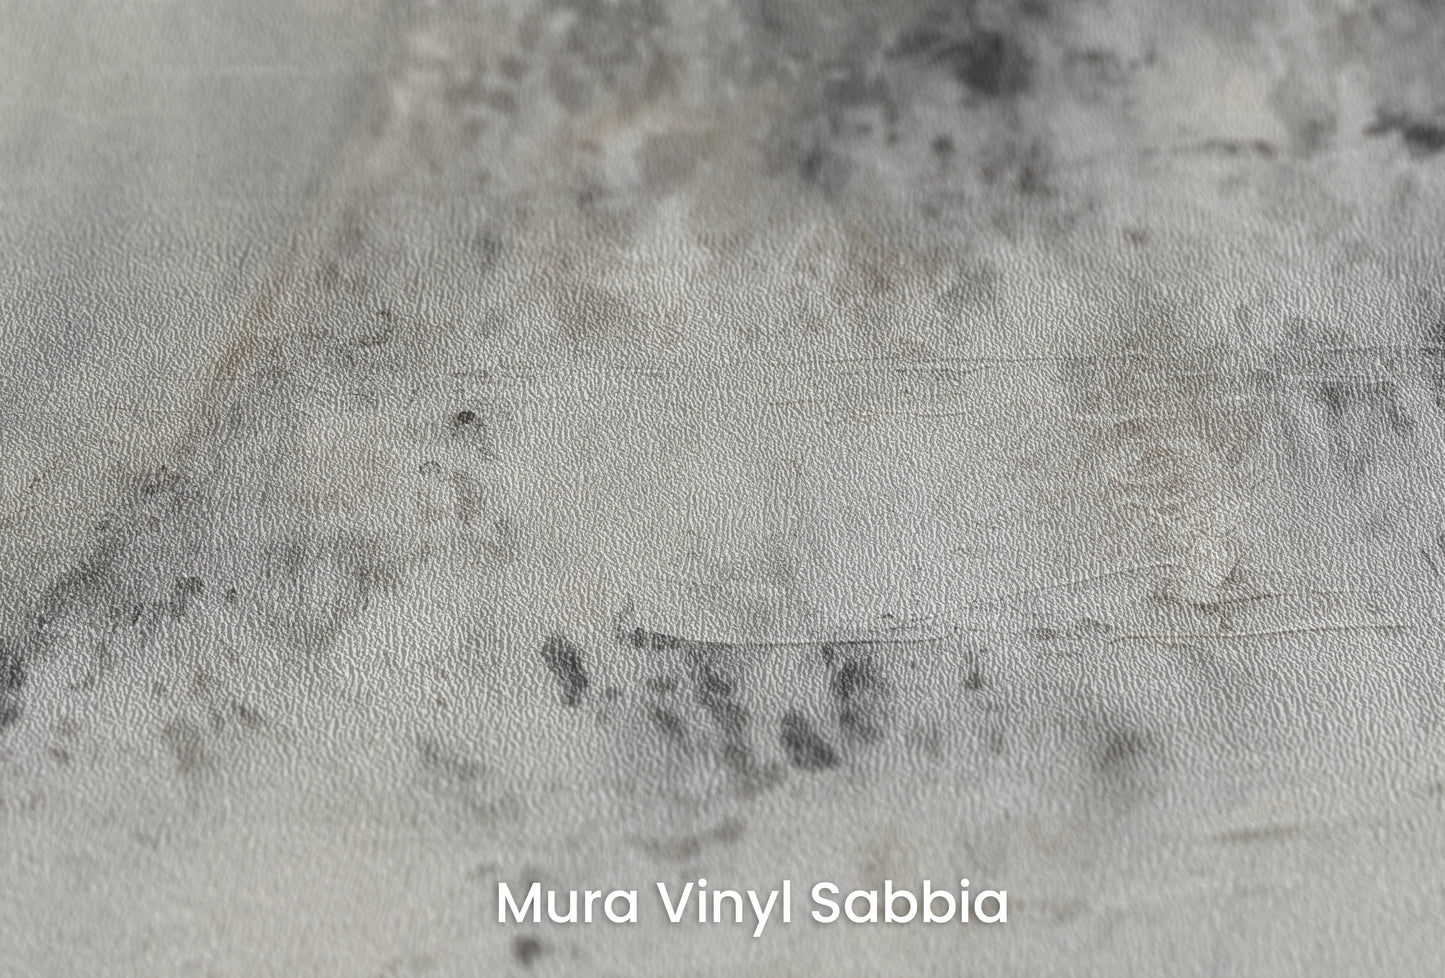 Zbliżenie na artystyczną fototapetę o nazwie Mercury's Shadow na podłożu Mura Vinyl Sabbia struktura grubego ziarna piasku.